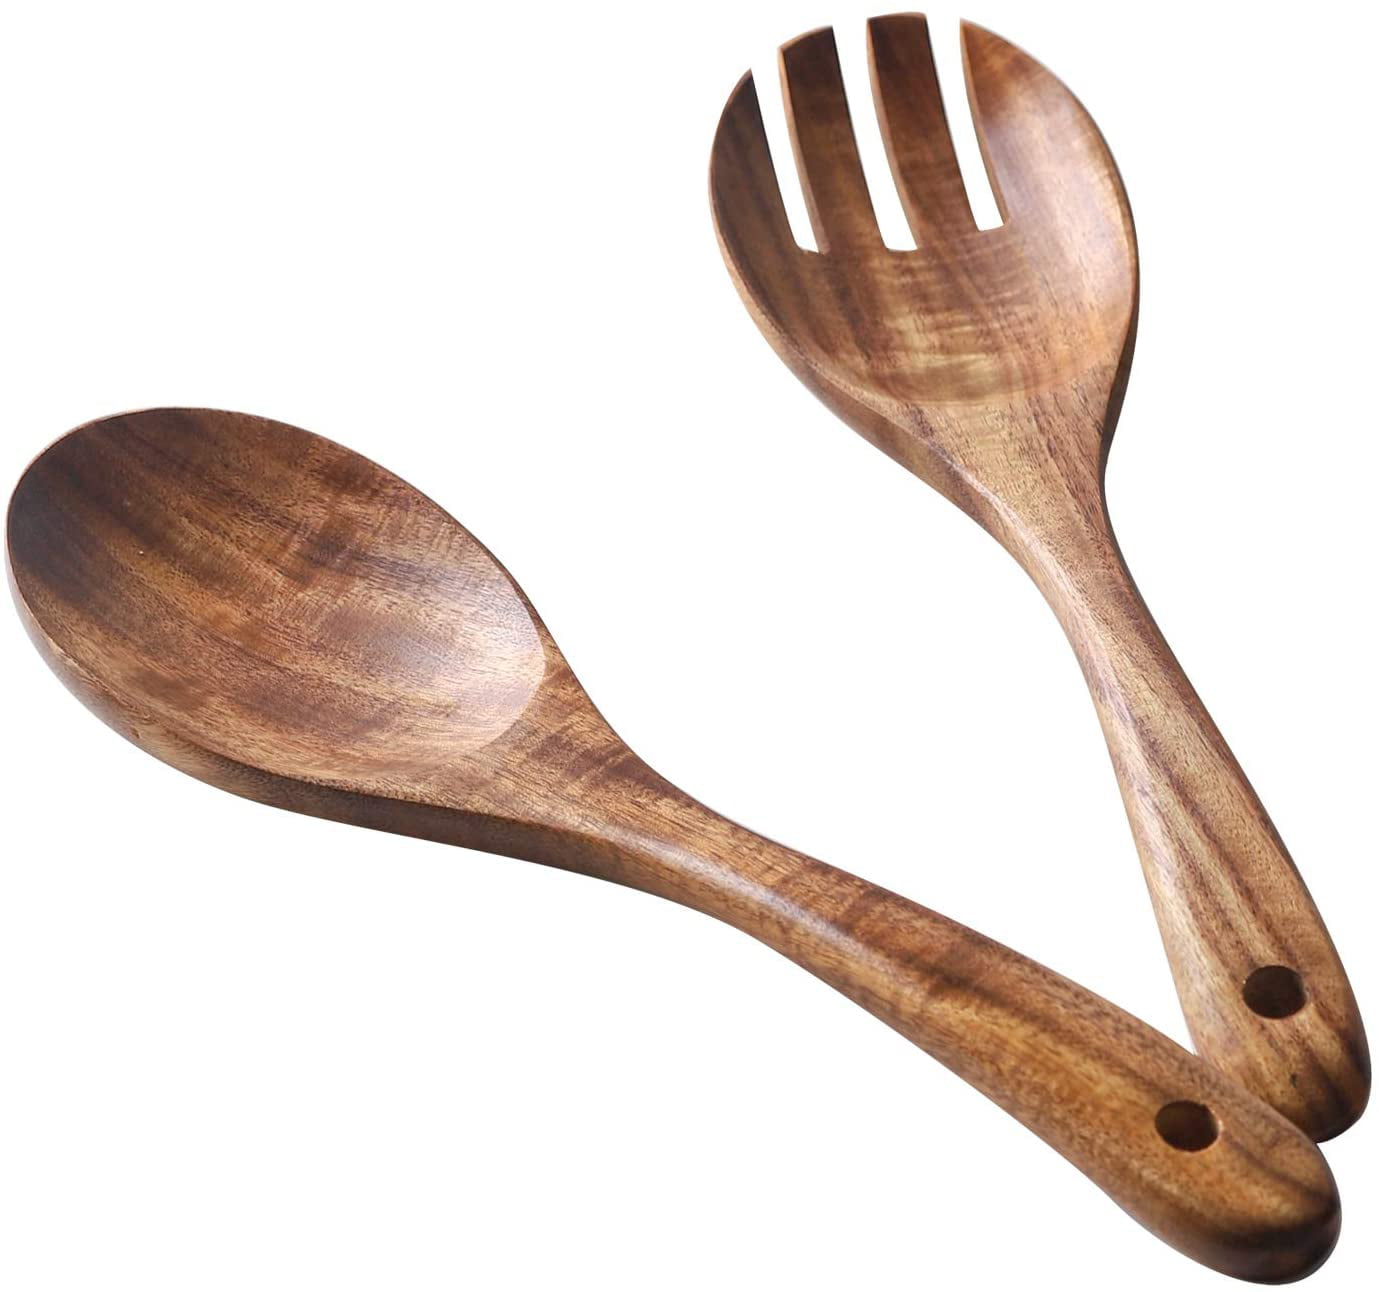 BOXWOOD SALAD FORK Duo Set,Handcrafted,Wooden,Special design fork,salad serving fork